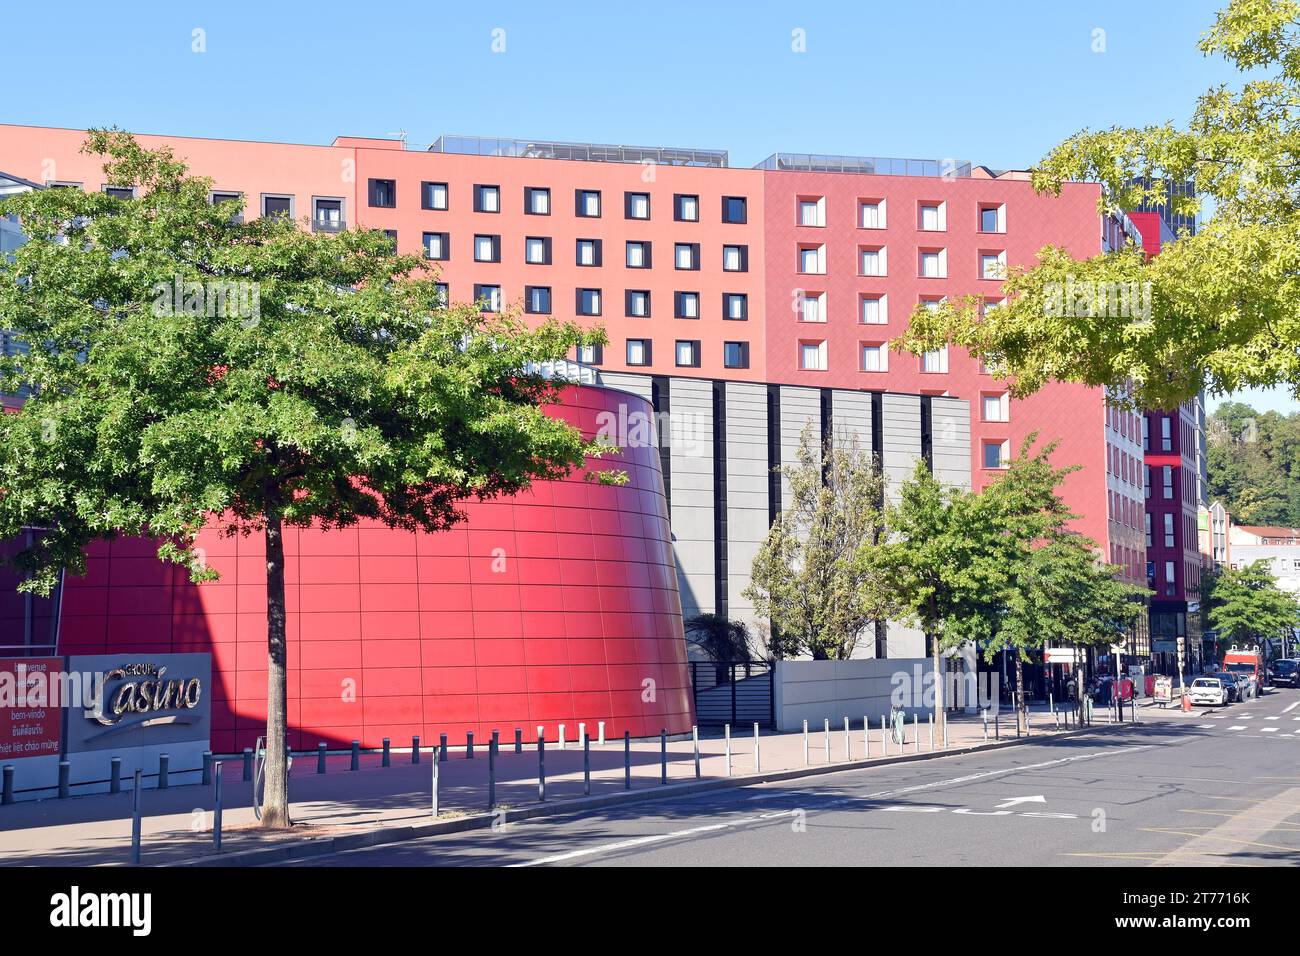 St Etienne, una città deindustrializzata che si reinventa, creando un'area commerciale e un centro di transito vicino alla straordinaria stazione ferroviaria SNCF, rinnovamento urbano Foto Stock